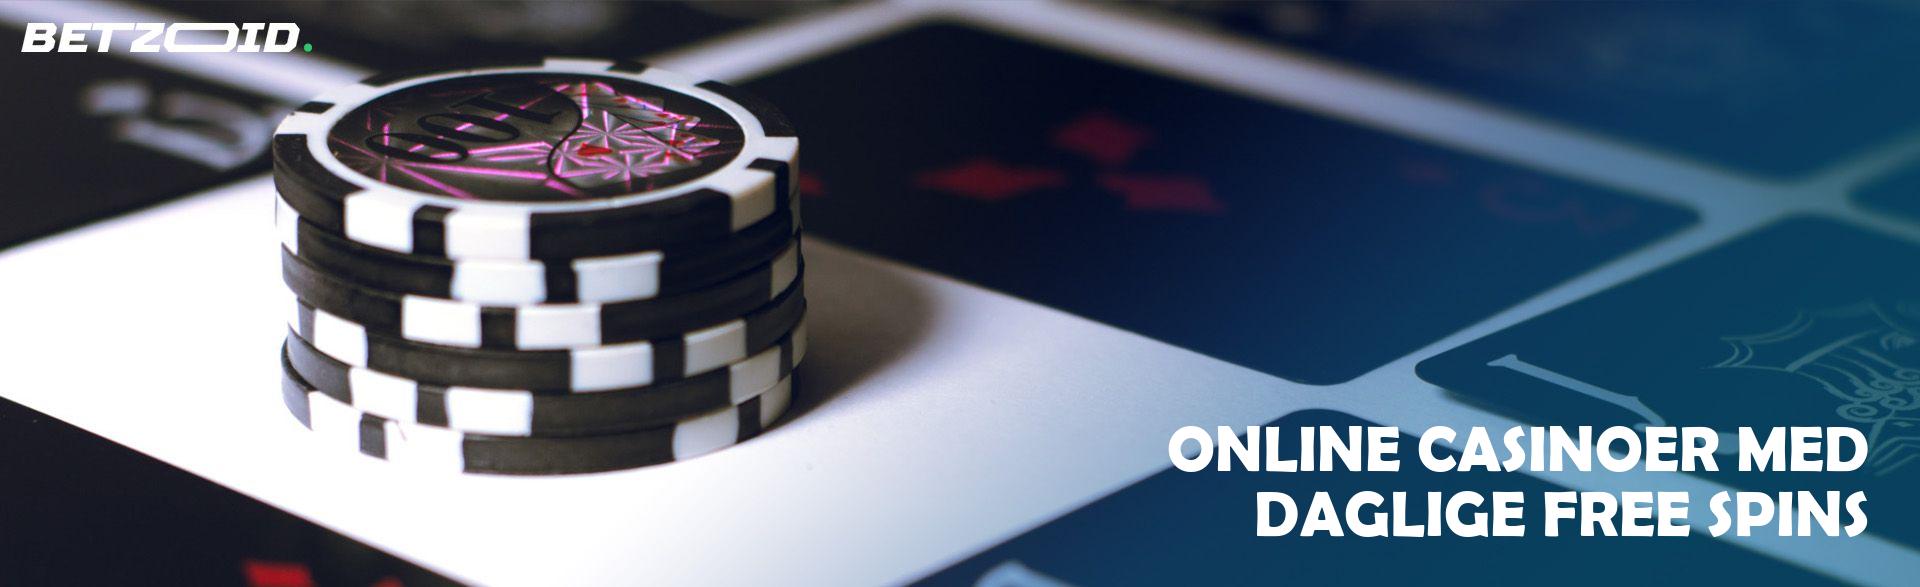 Online Casinoer med Daglige Free Spins.